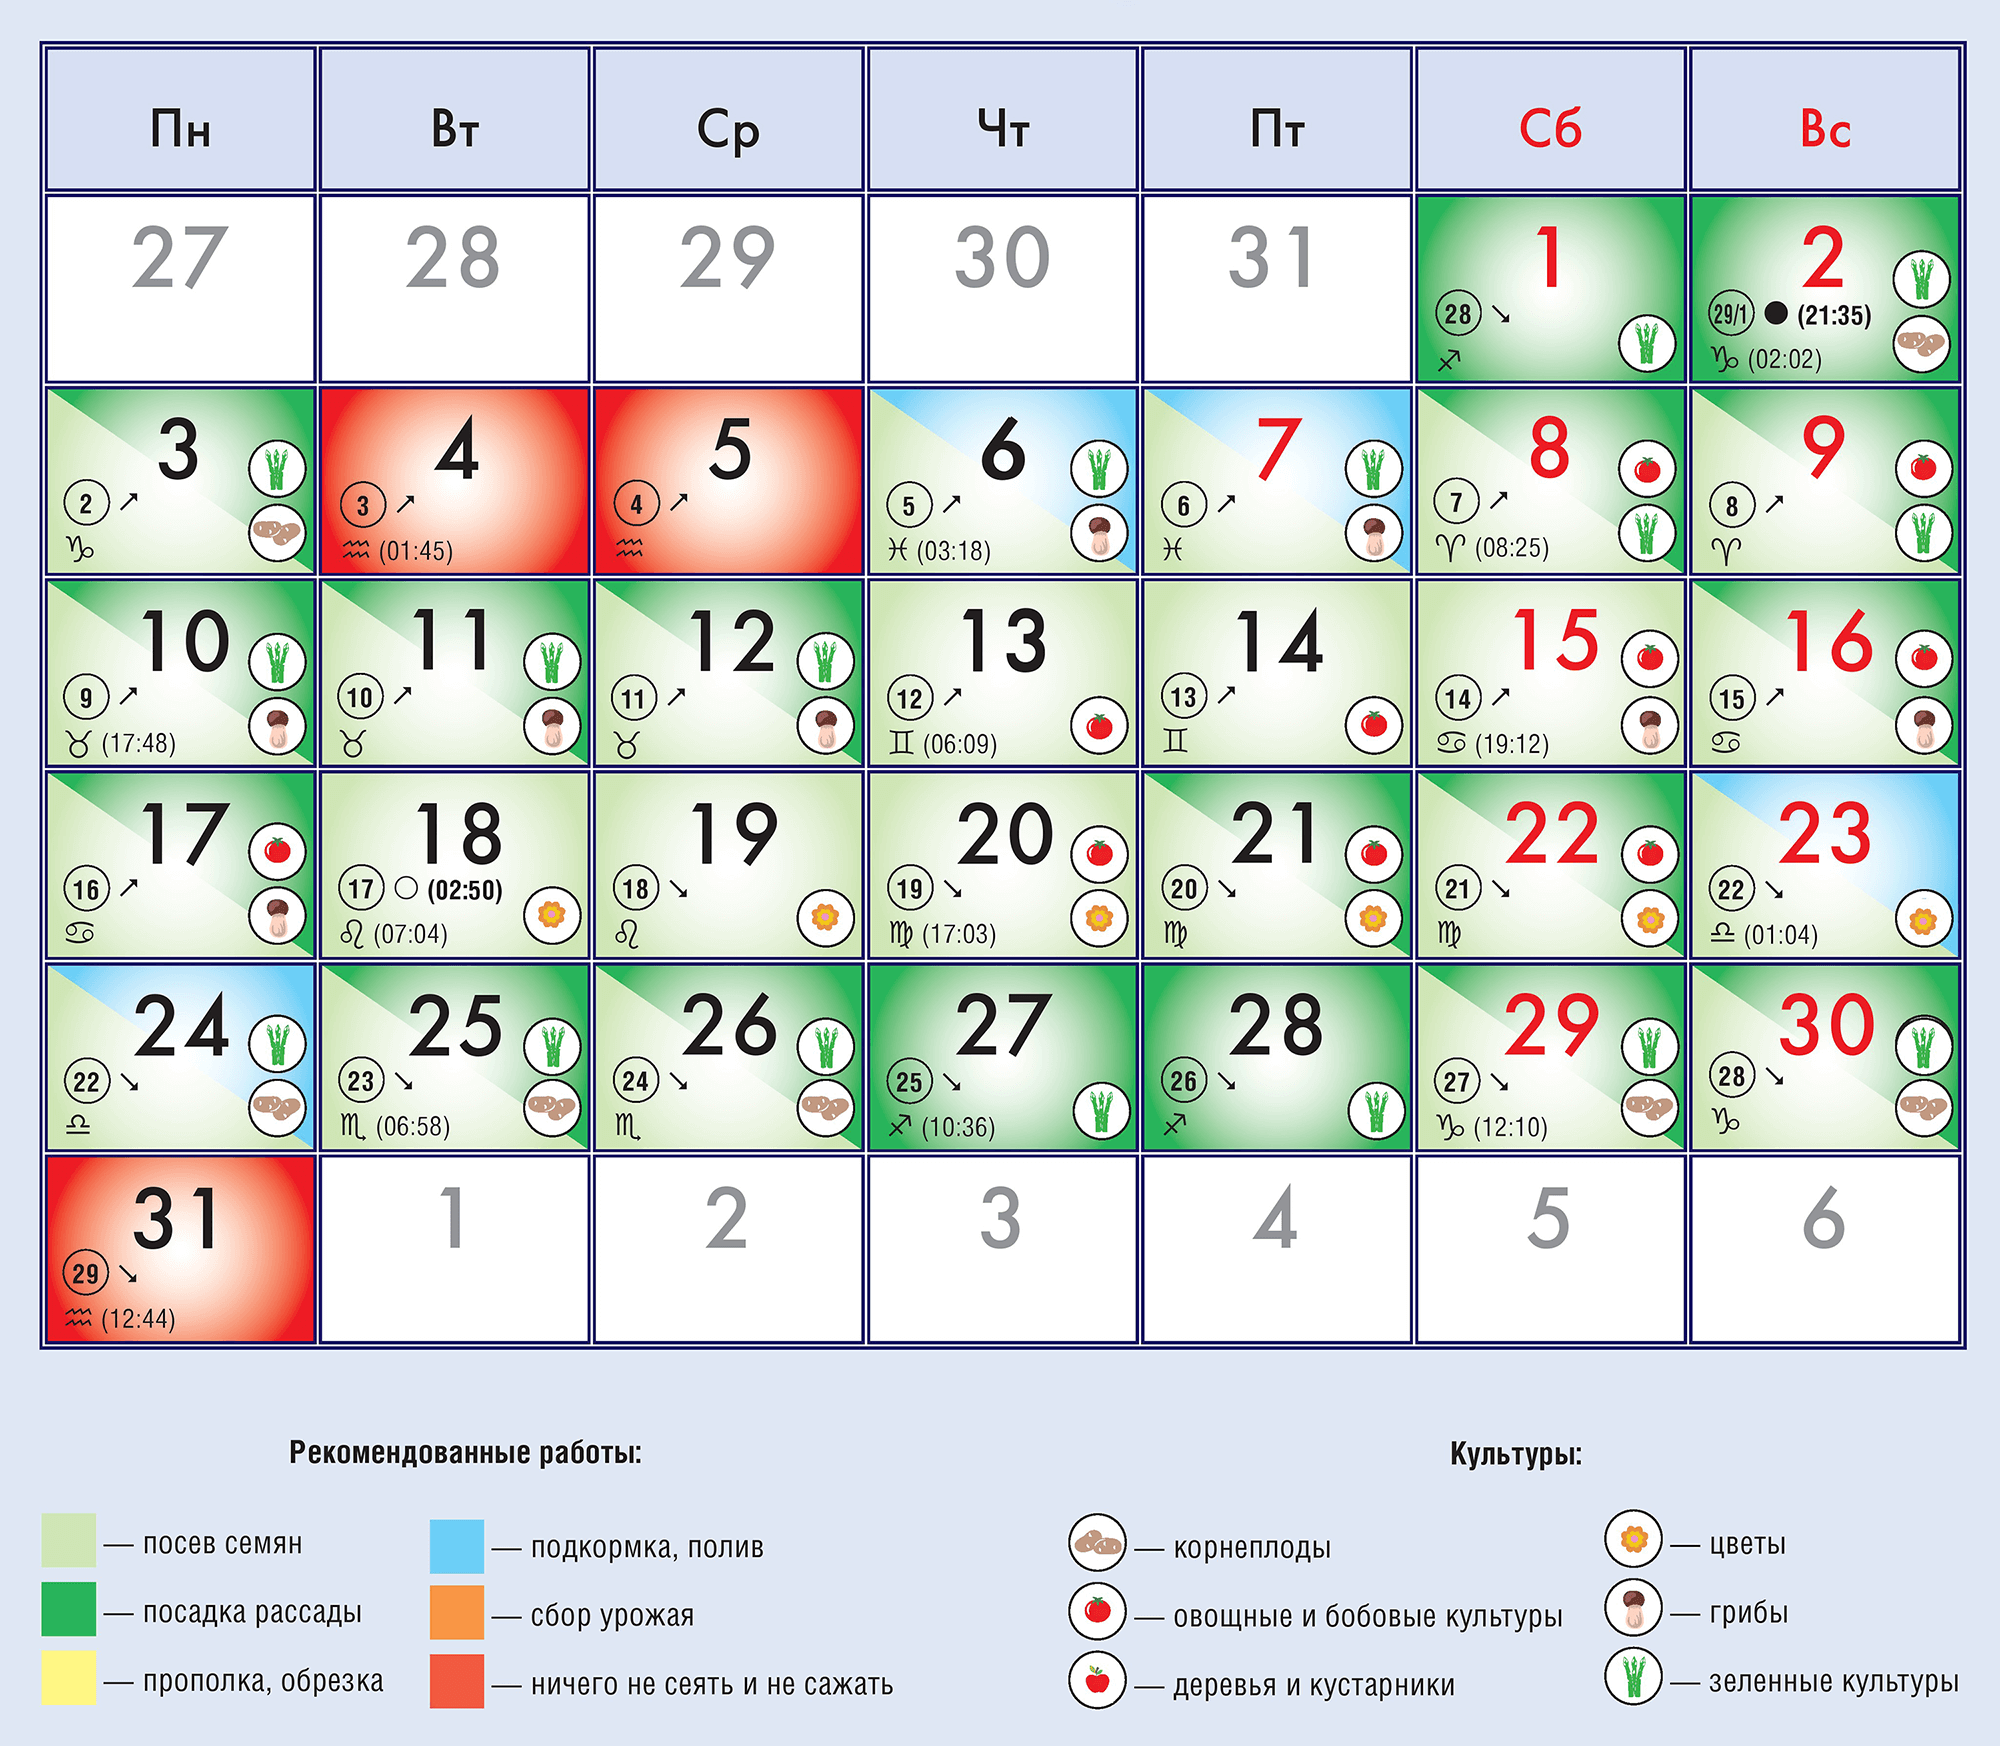 Эпиляция или депиляция по лунному календарю на все месяцы